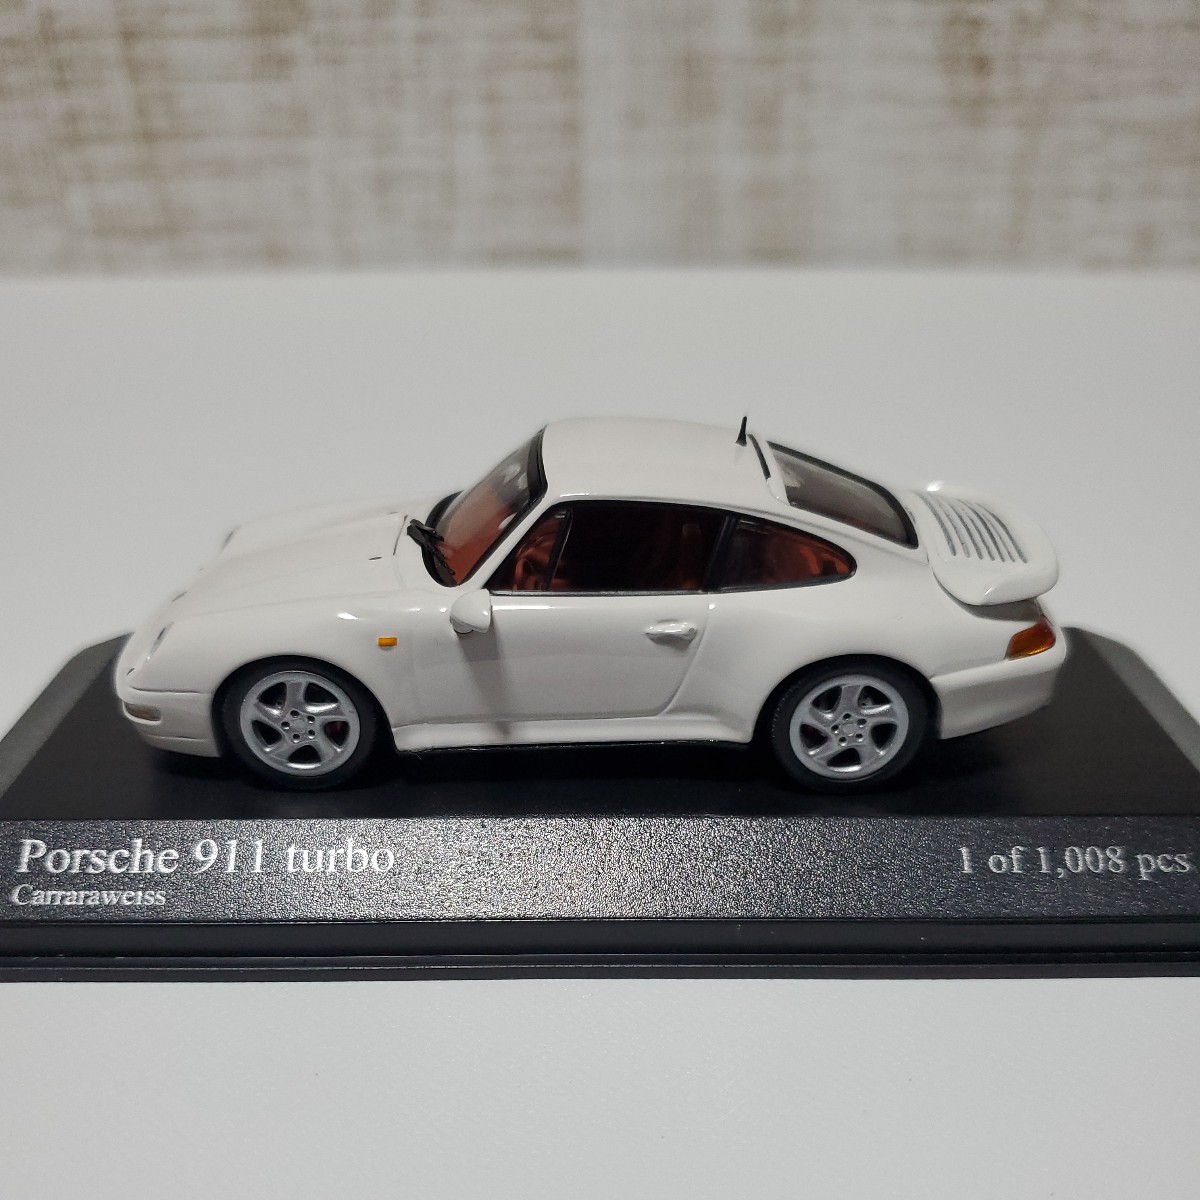 1/43 ミニチャンプス/Porsche 911 turbo 1995 Carraraweiss/ポルシェ 911 ターボ ホワイト